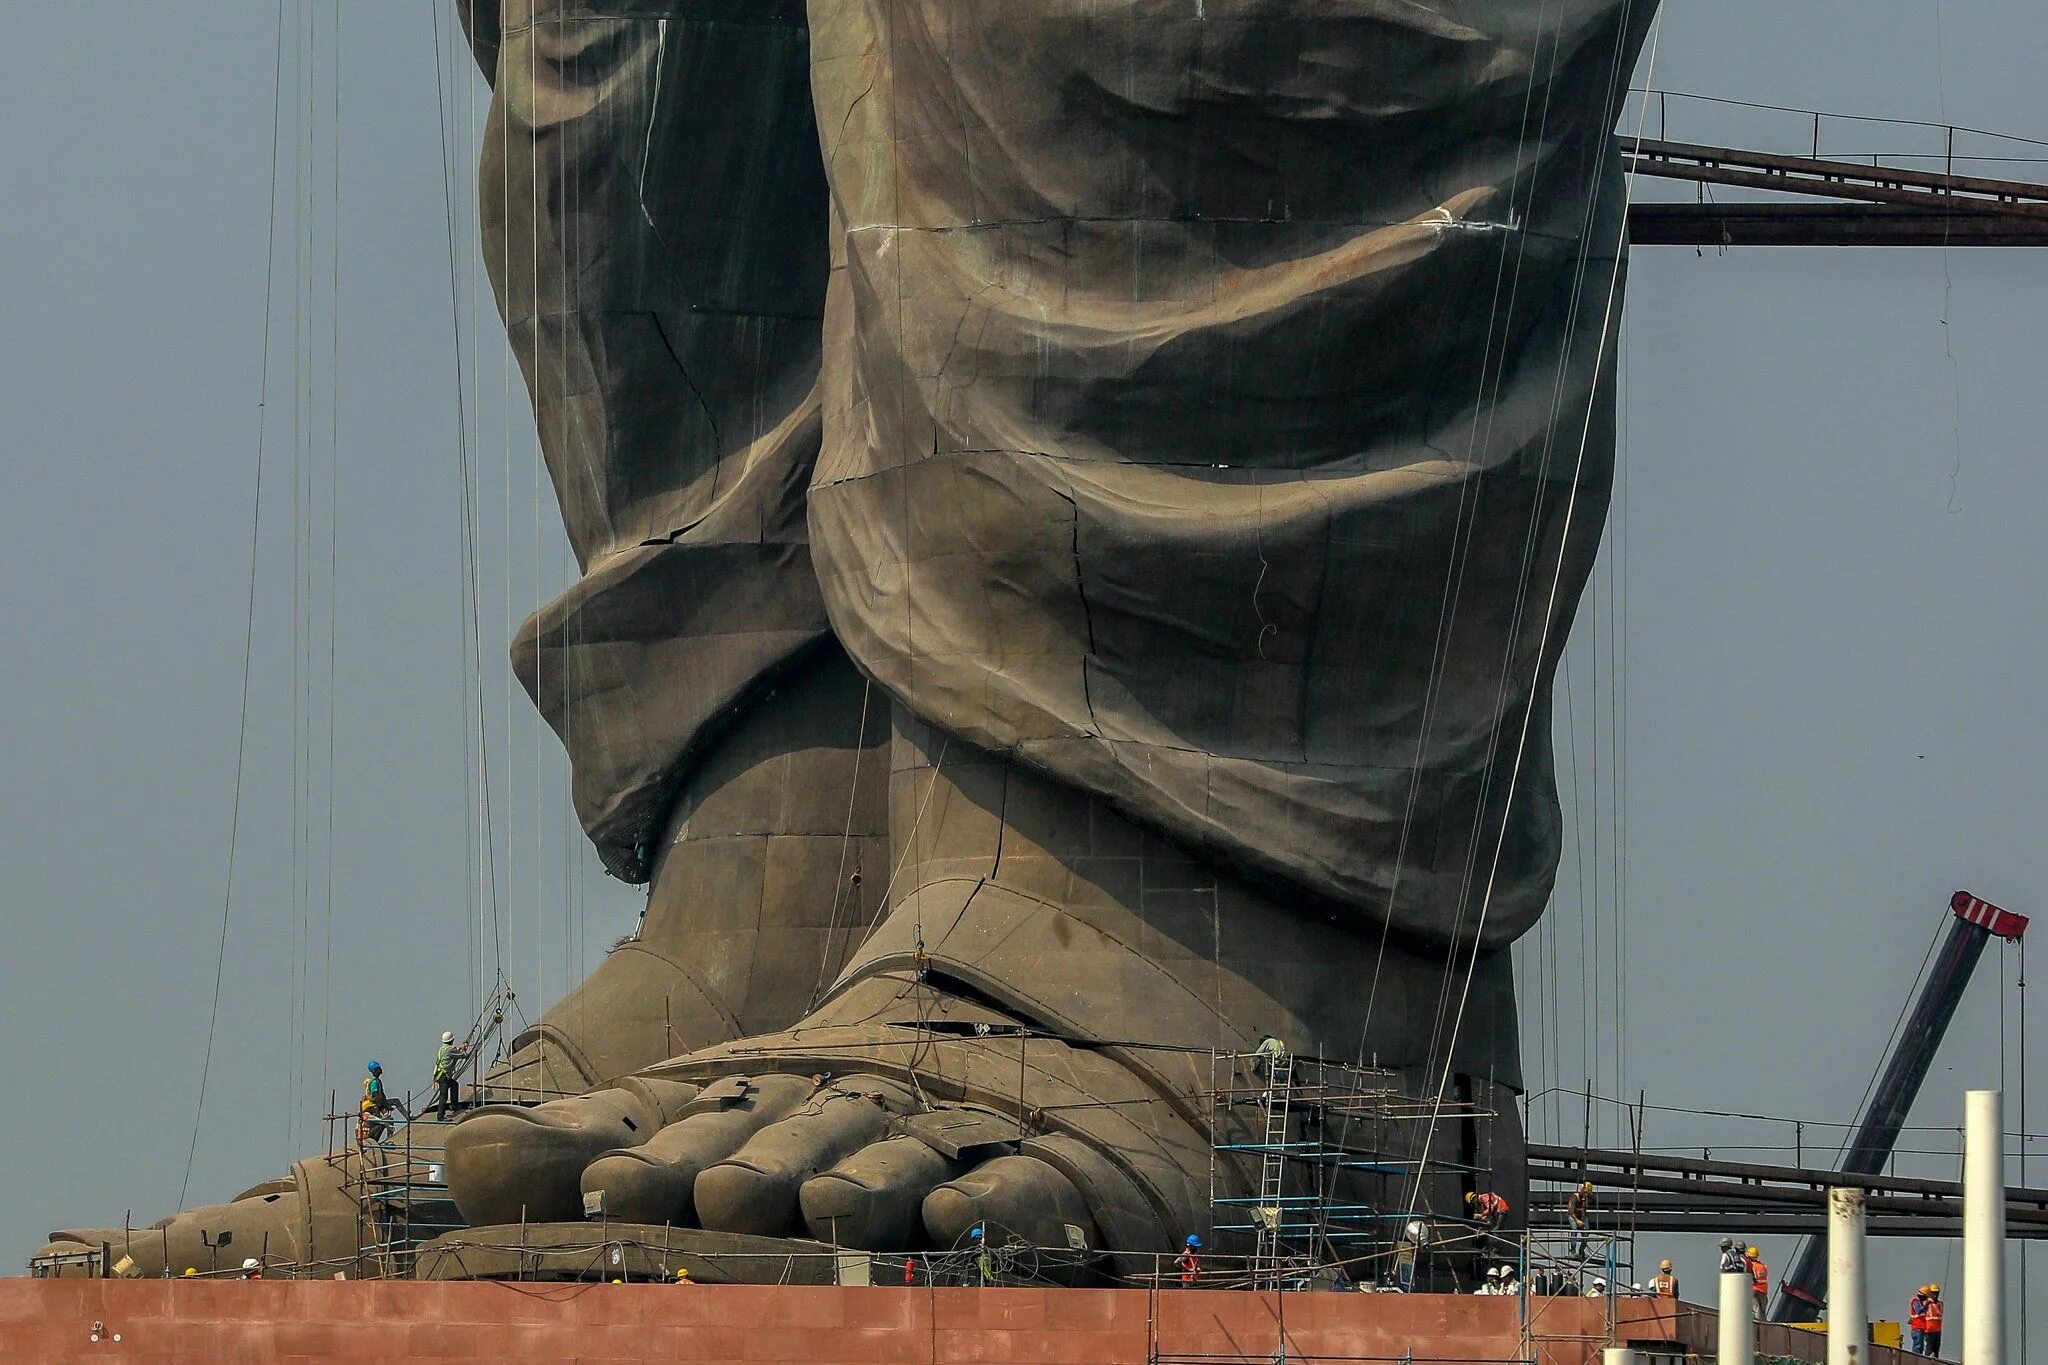 Огромный держаться. Статуя единства Валлабхаи Патель. Статуя в Индии 182 м. Статуя единства Гуджарат. Статуя единства — статуя Валлабхаи Пателя.